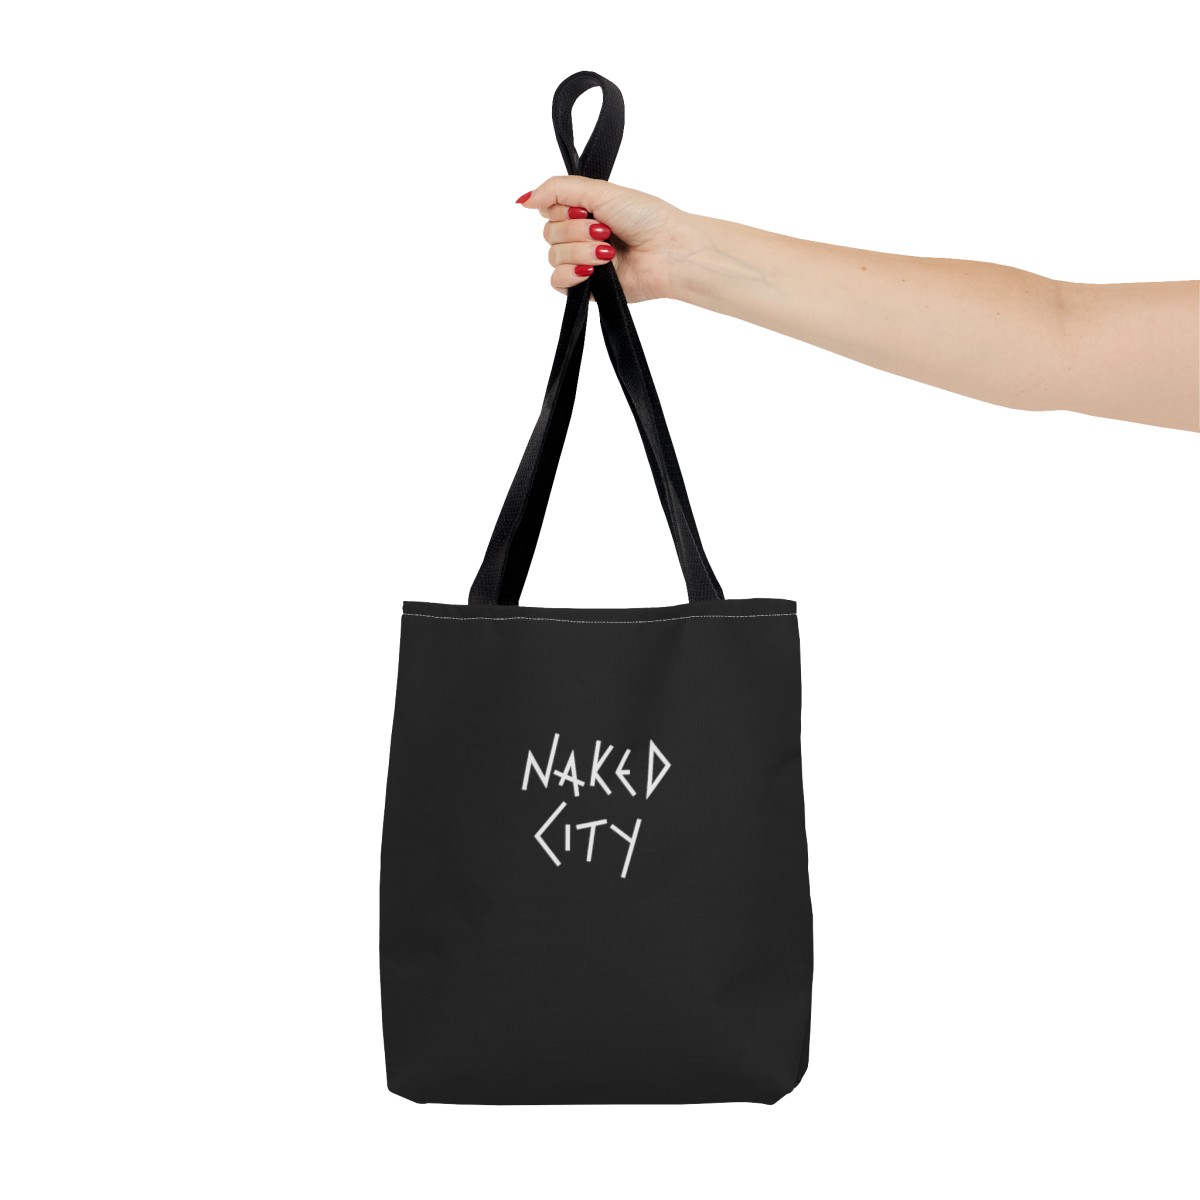 Naked City Tote Bag product thumbnail image